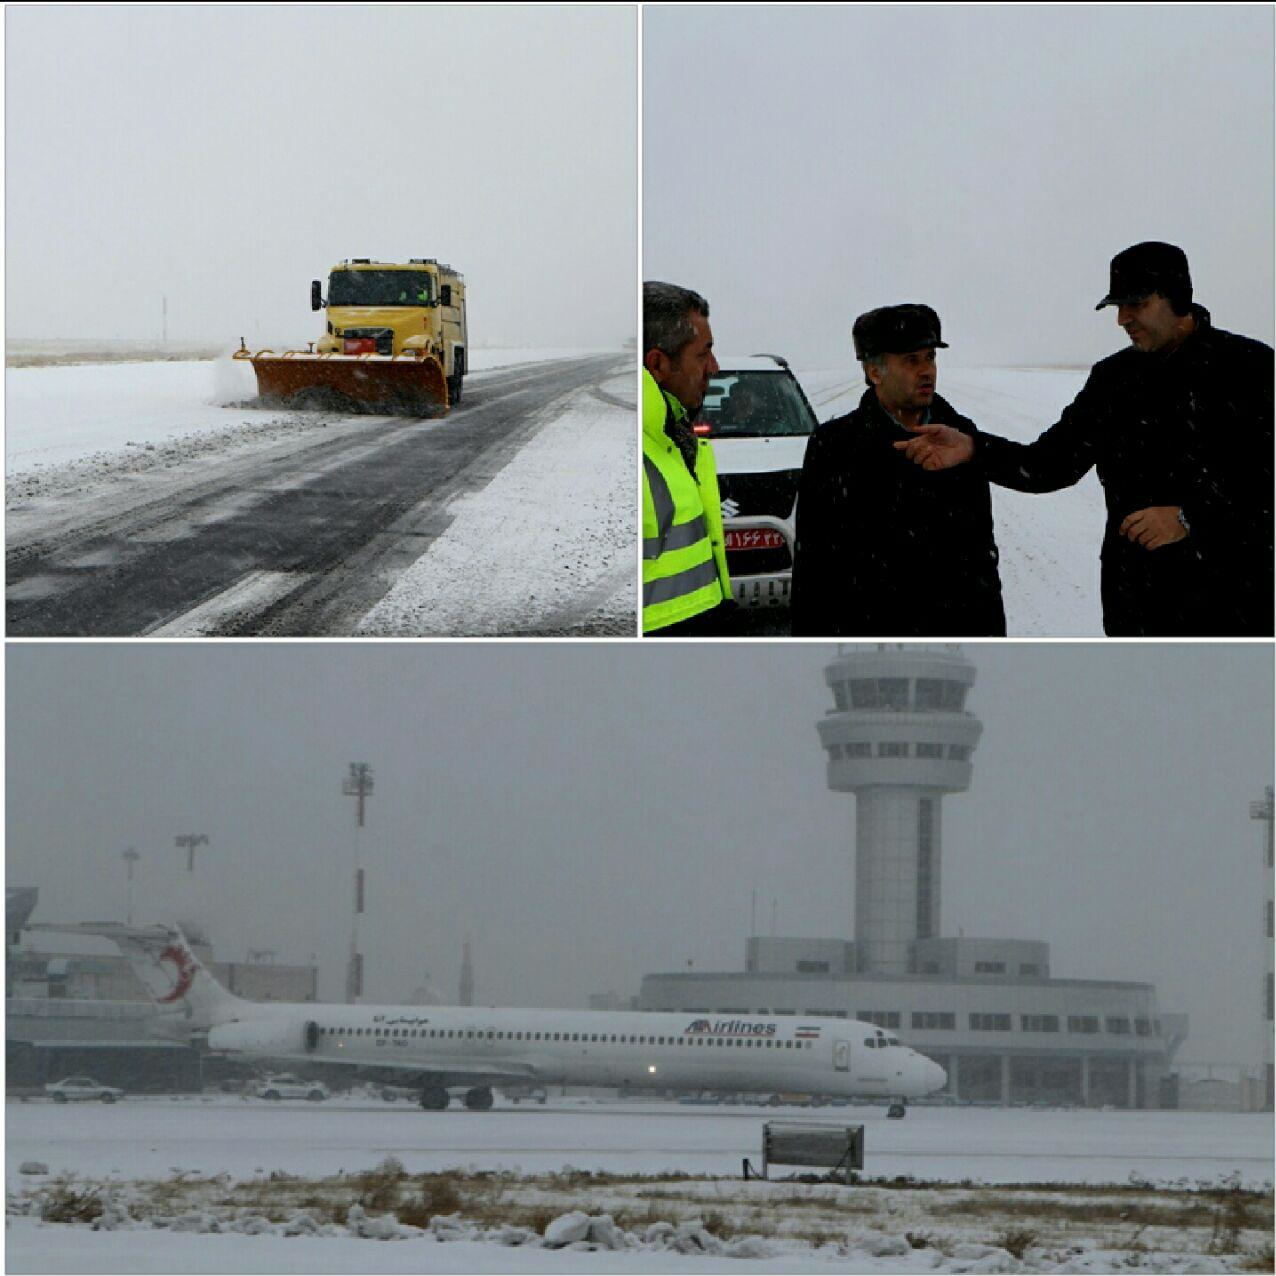 فرودگاه تبریز با وجود بارش سنگین برف باز است/ پرواز شیراز – تبریز – شیراز باطل شده است